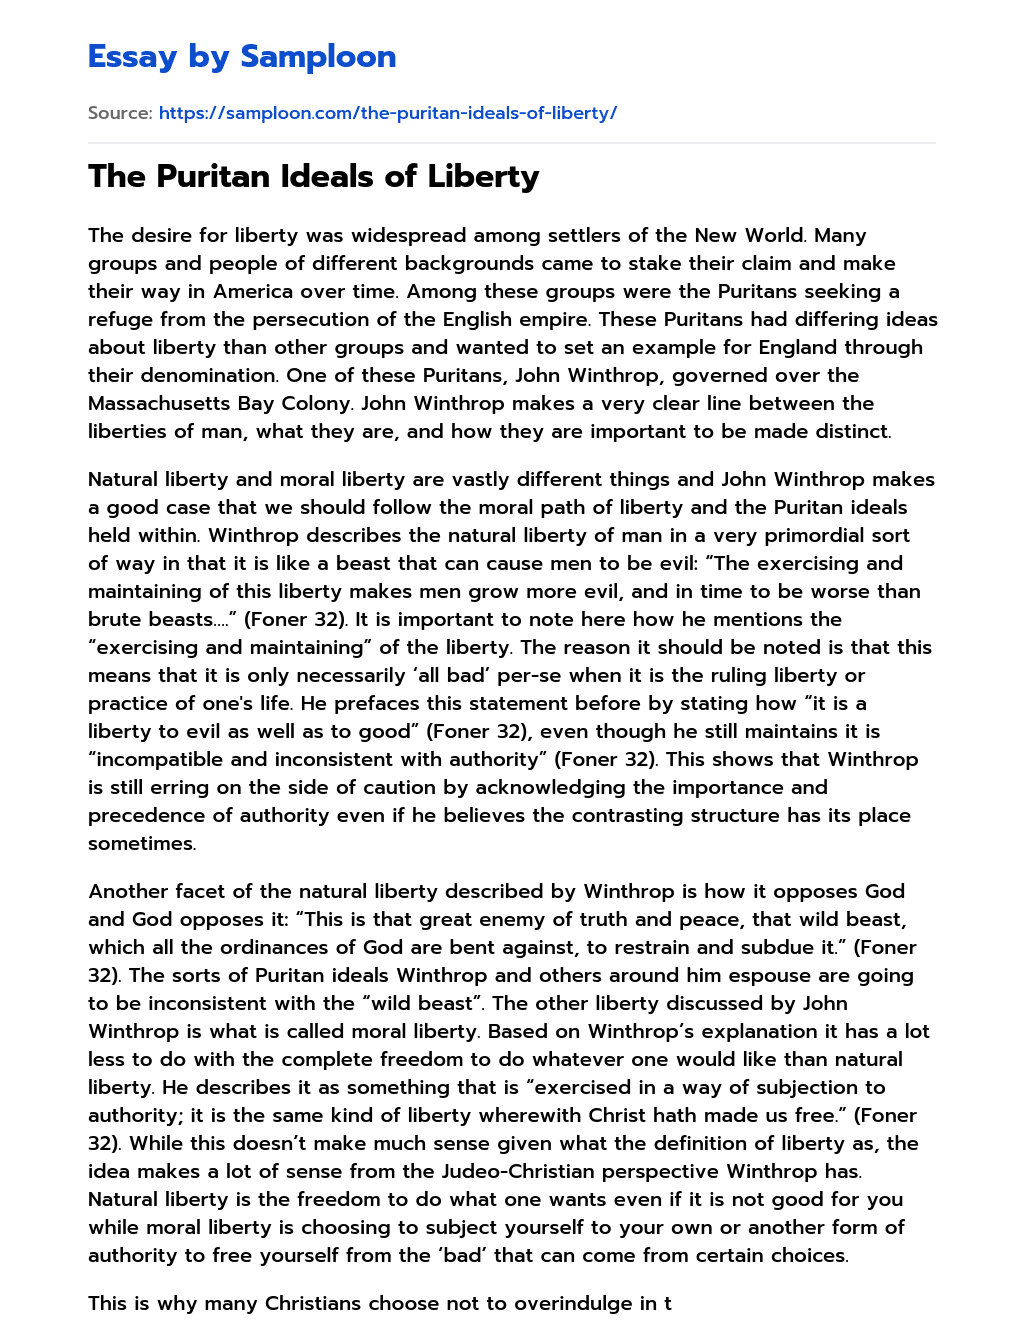 The Puritan Ideals of Liberty essay